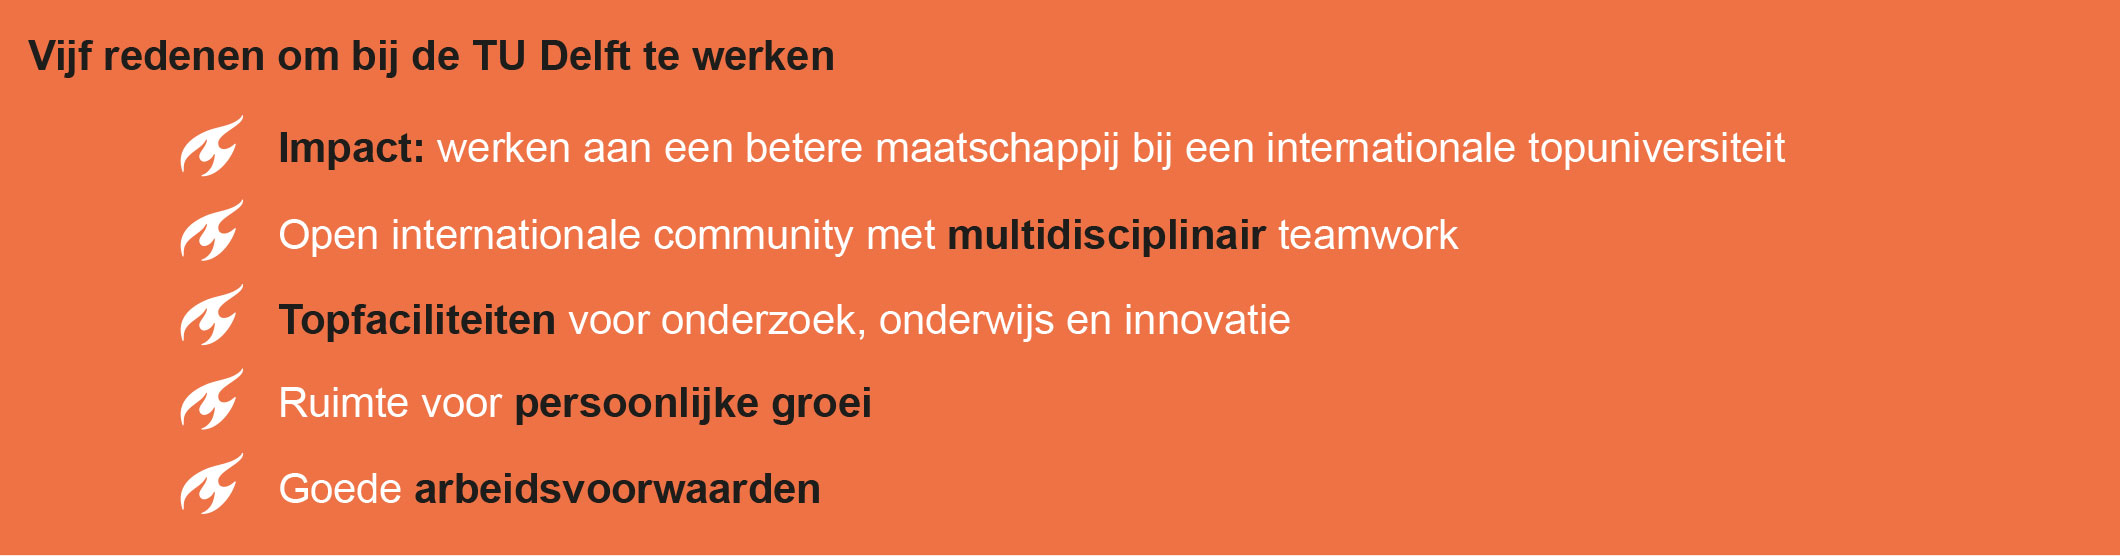 Vijf redenen om bij de TU Delft te werken